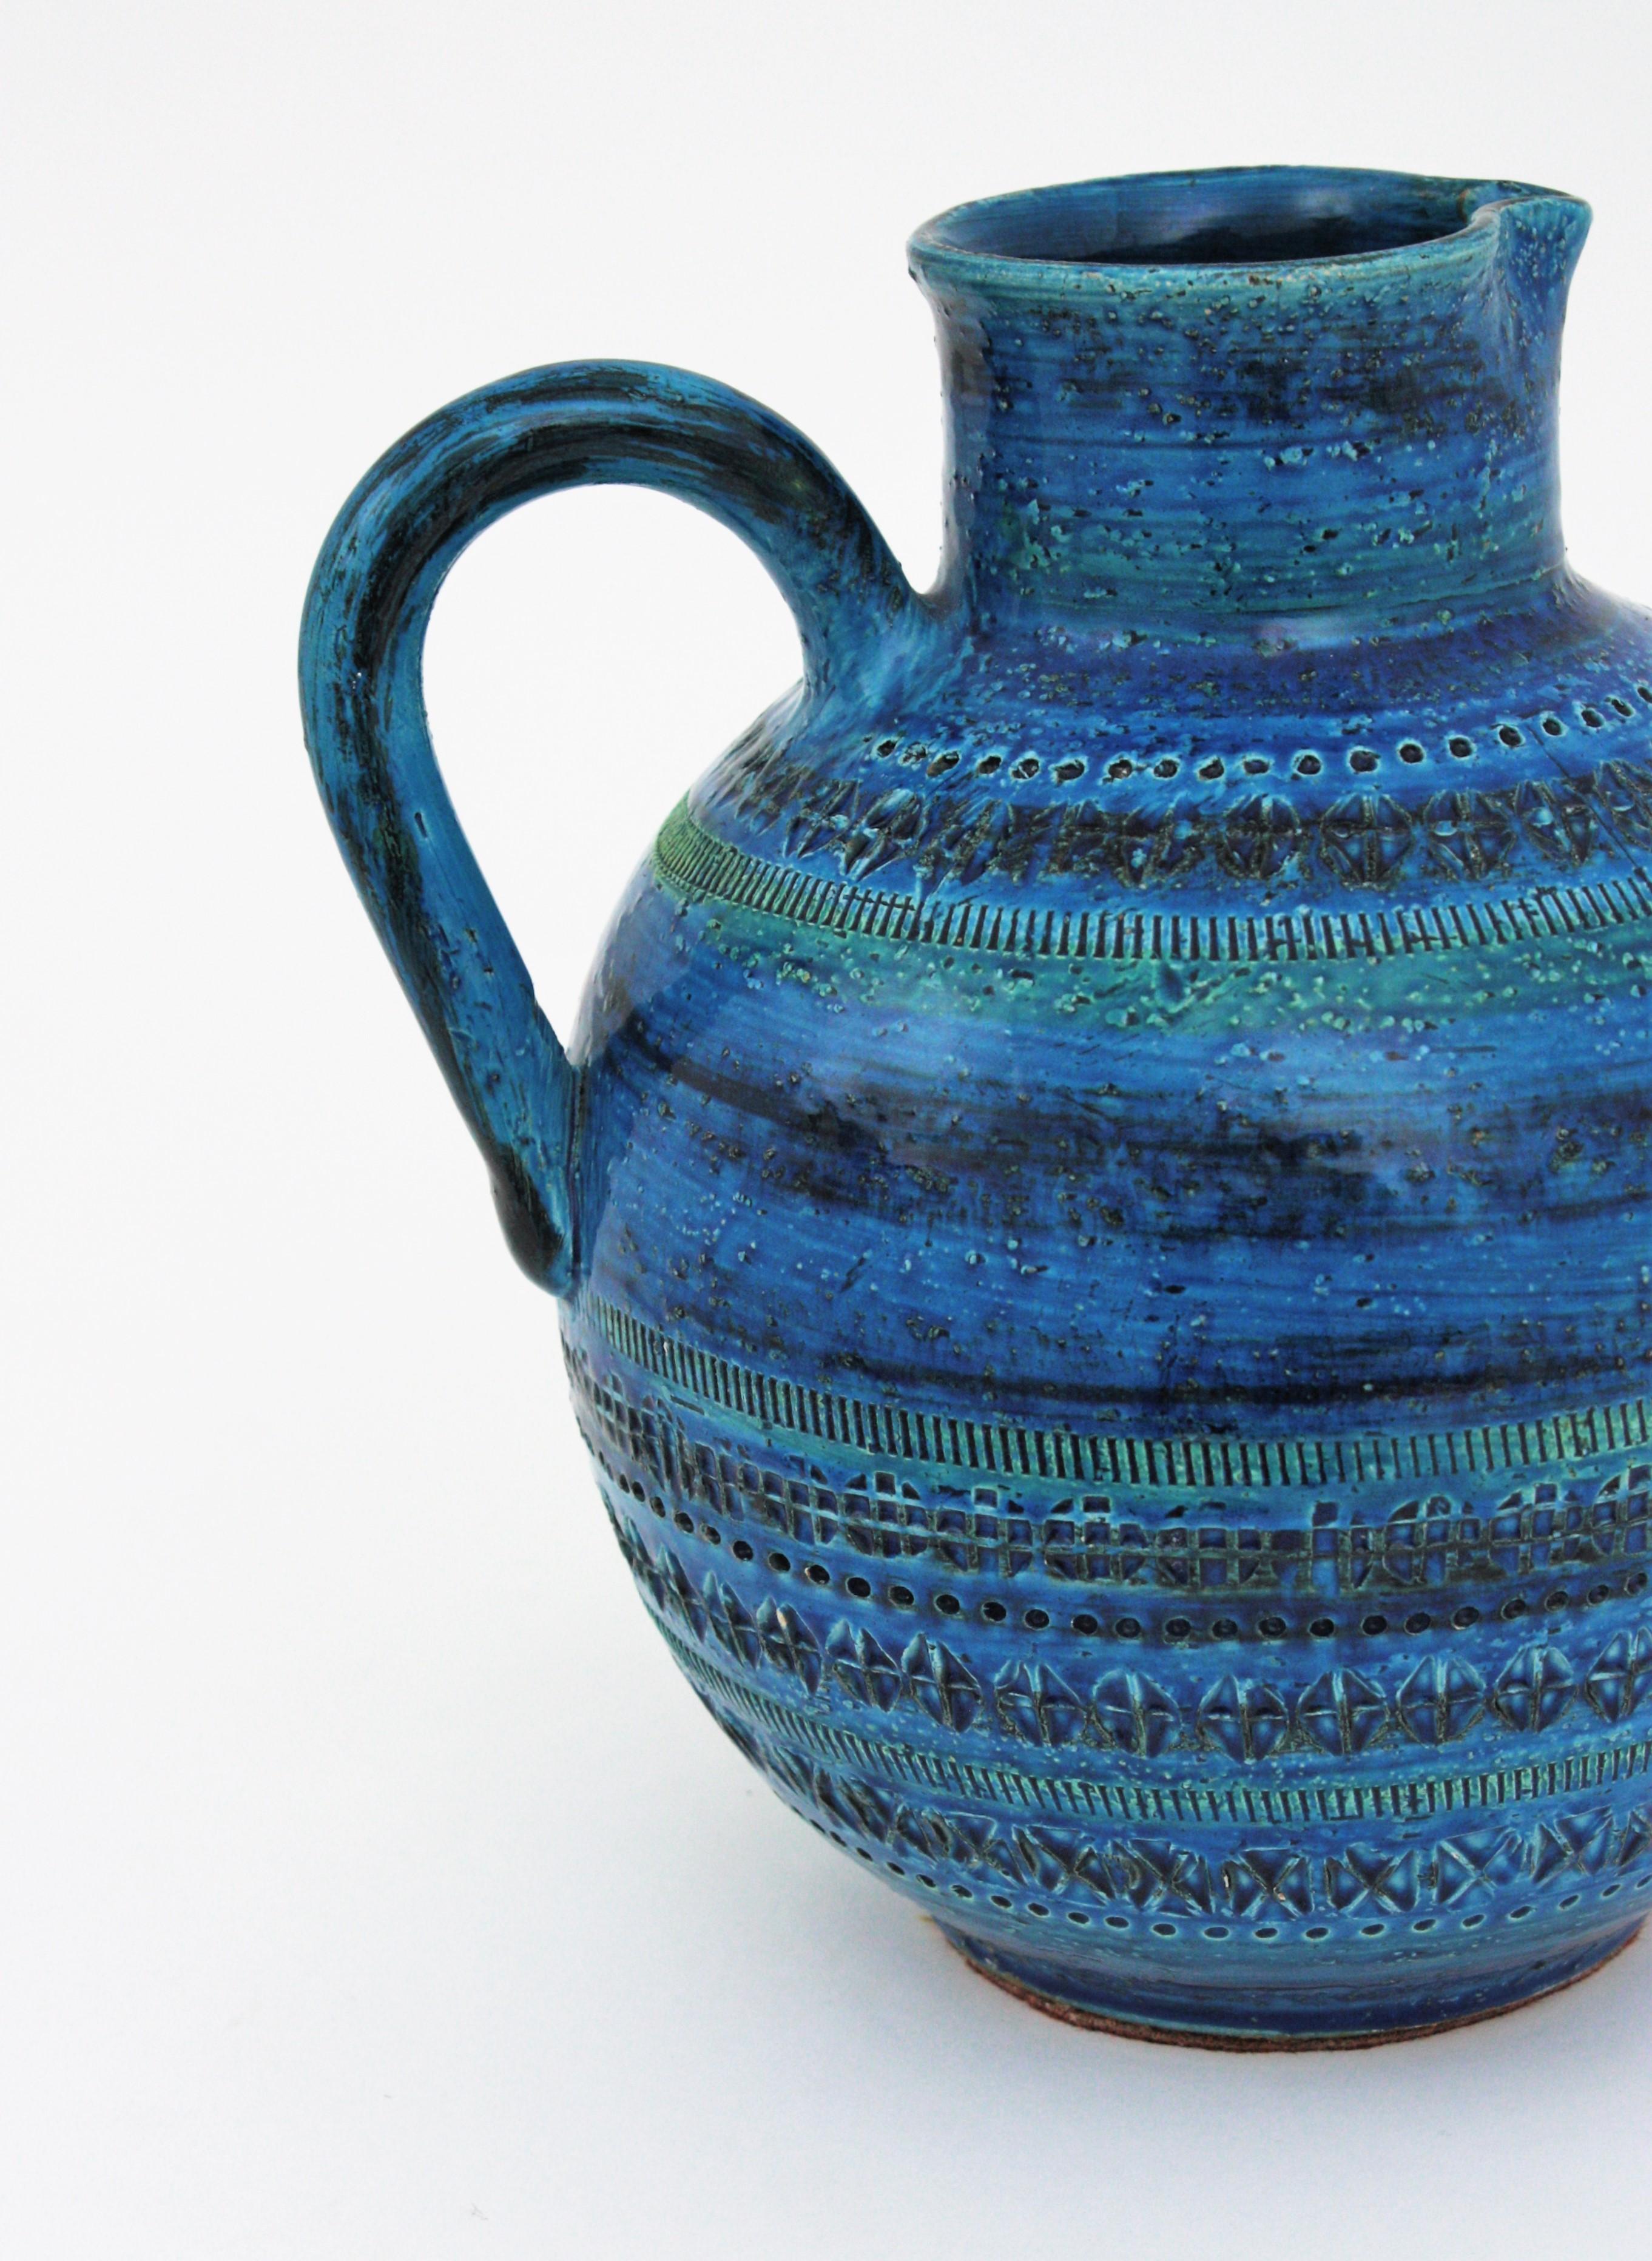 Pottery Aldo Londi Bitossi Rimini Blue  Glazed Ceramic XL Jug Vase For Sale